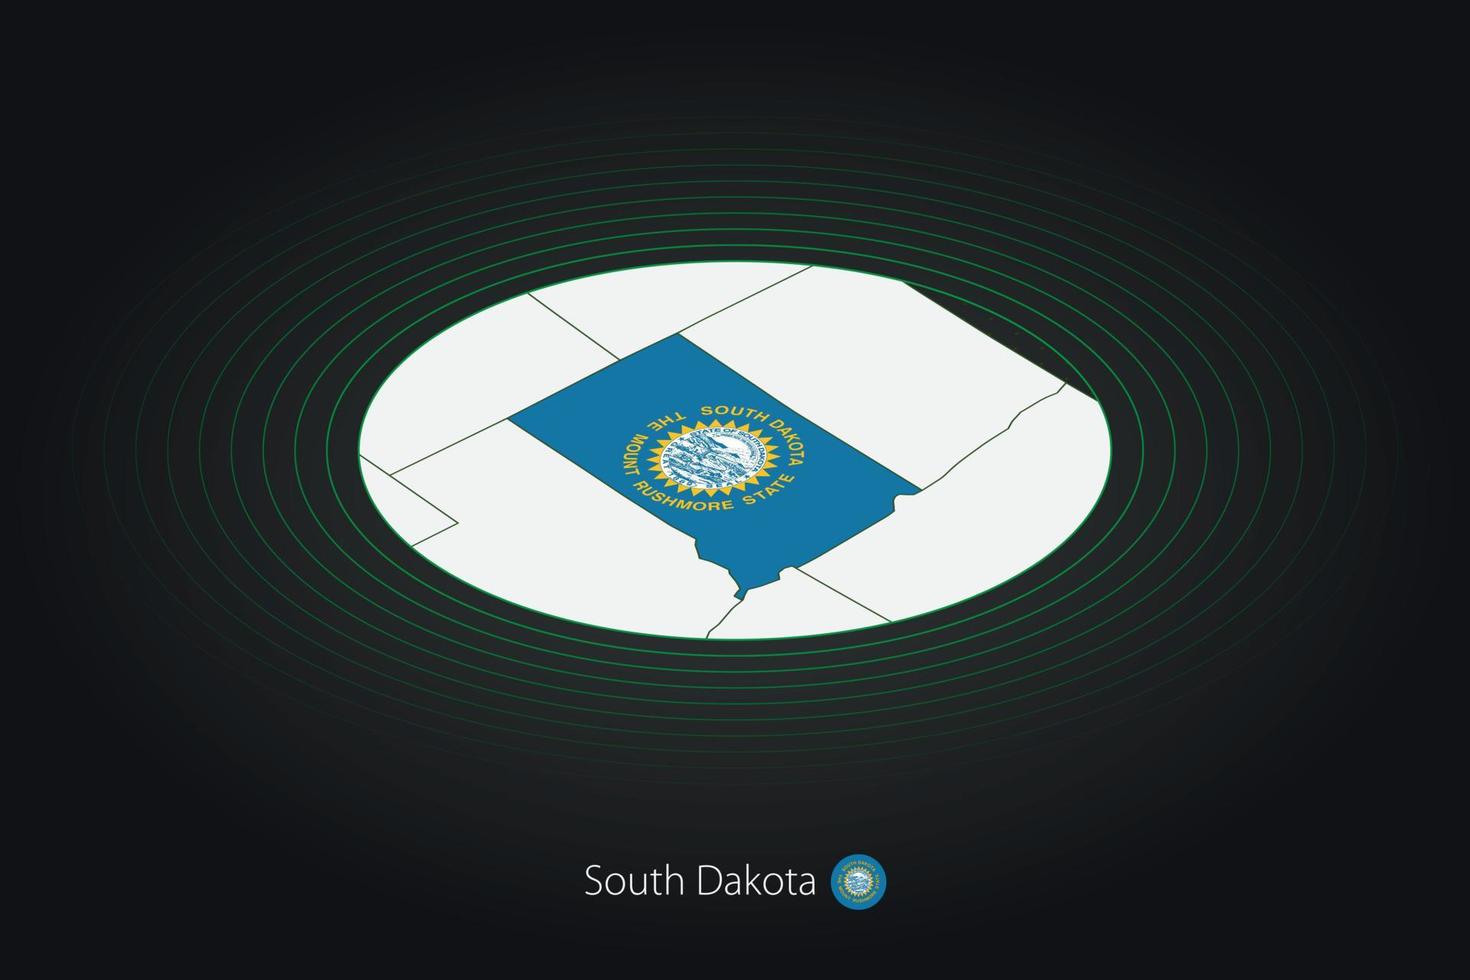 söder dakota Karta i mörk Färg, oval Karta med angränsande oss stater. vektor